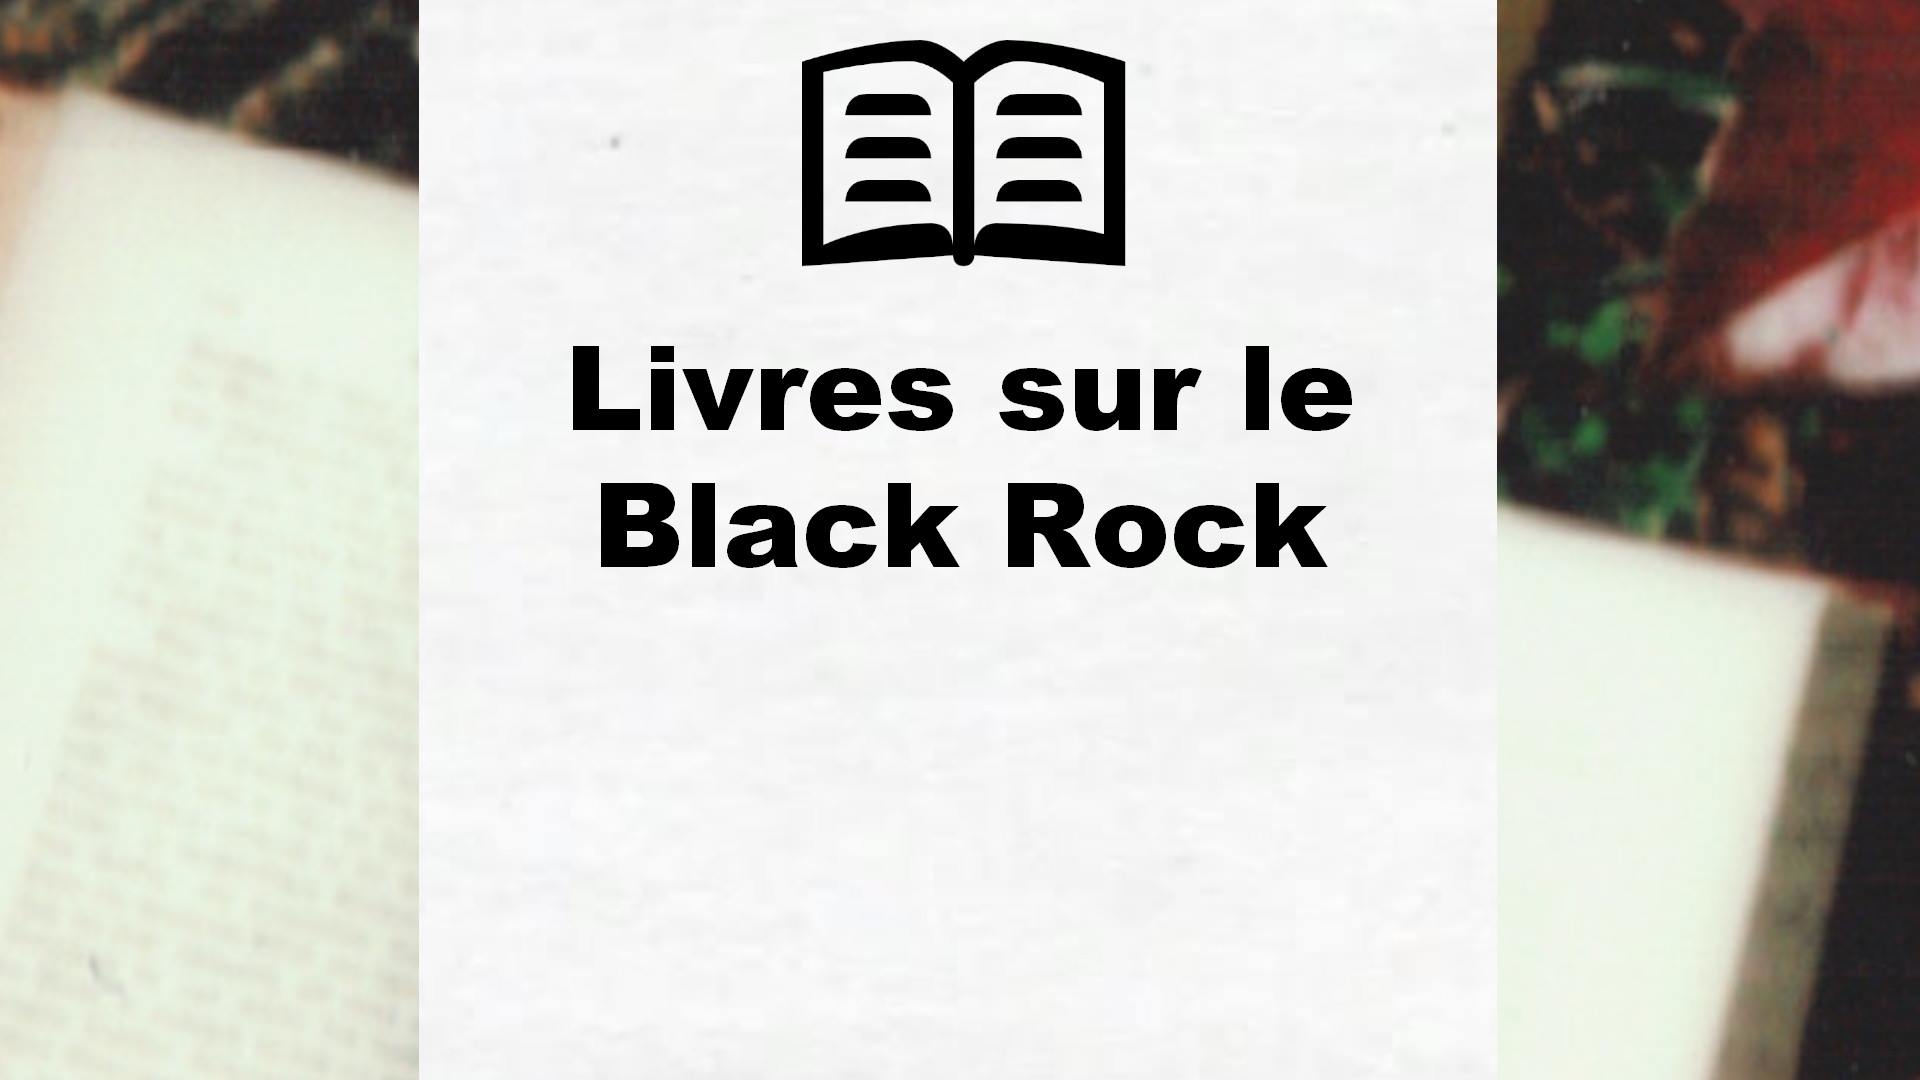 Livres sur le Black Rock